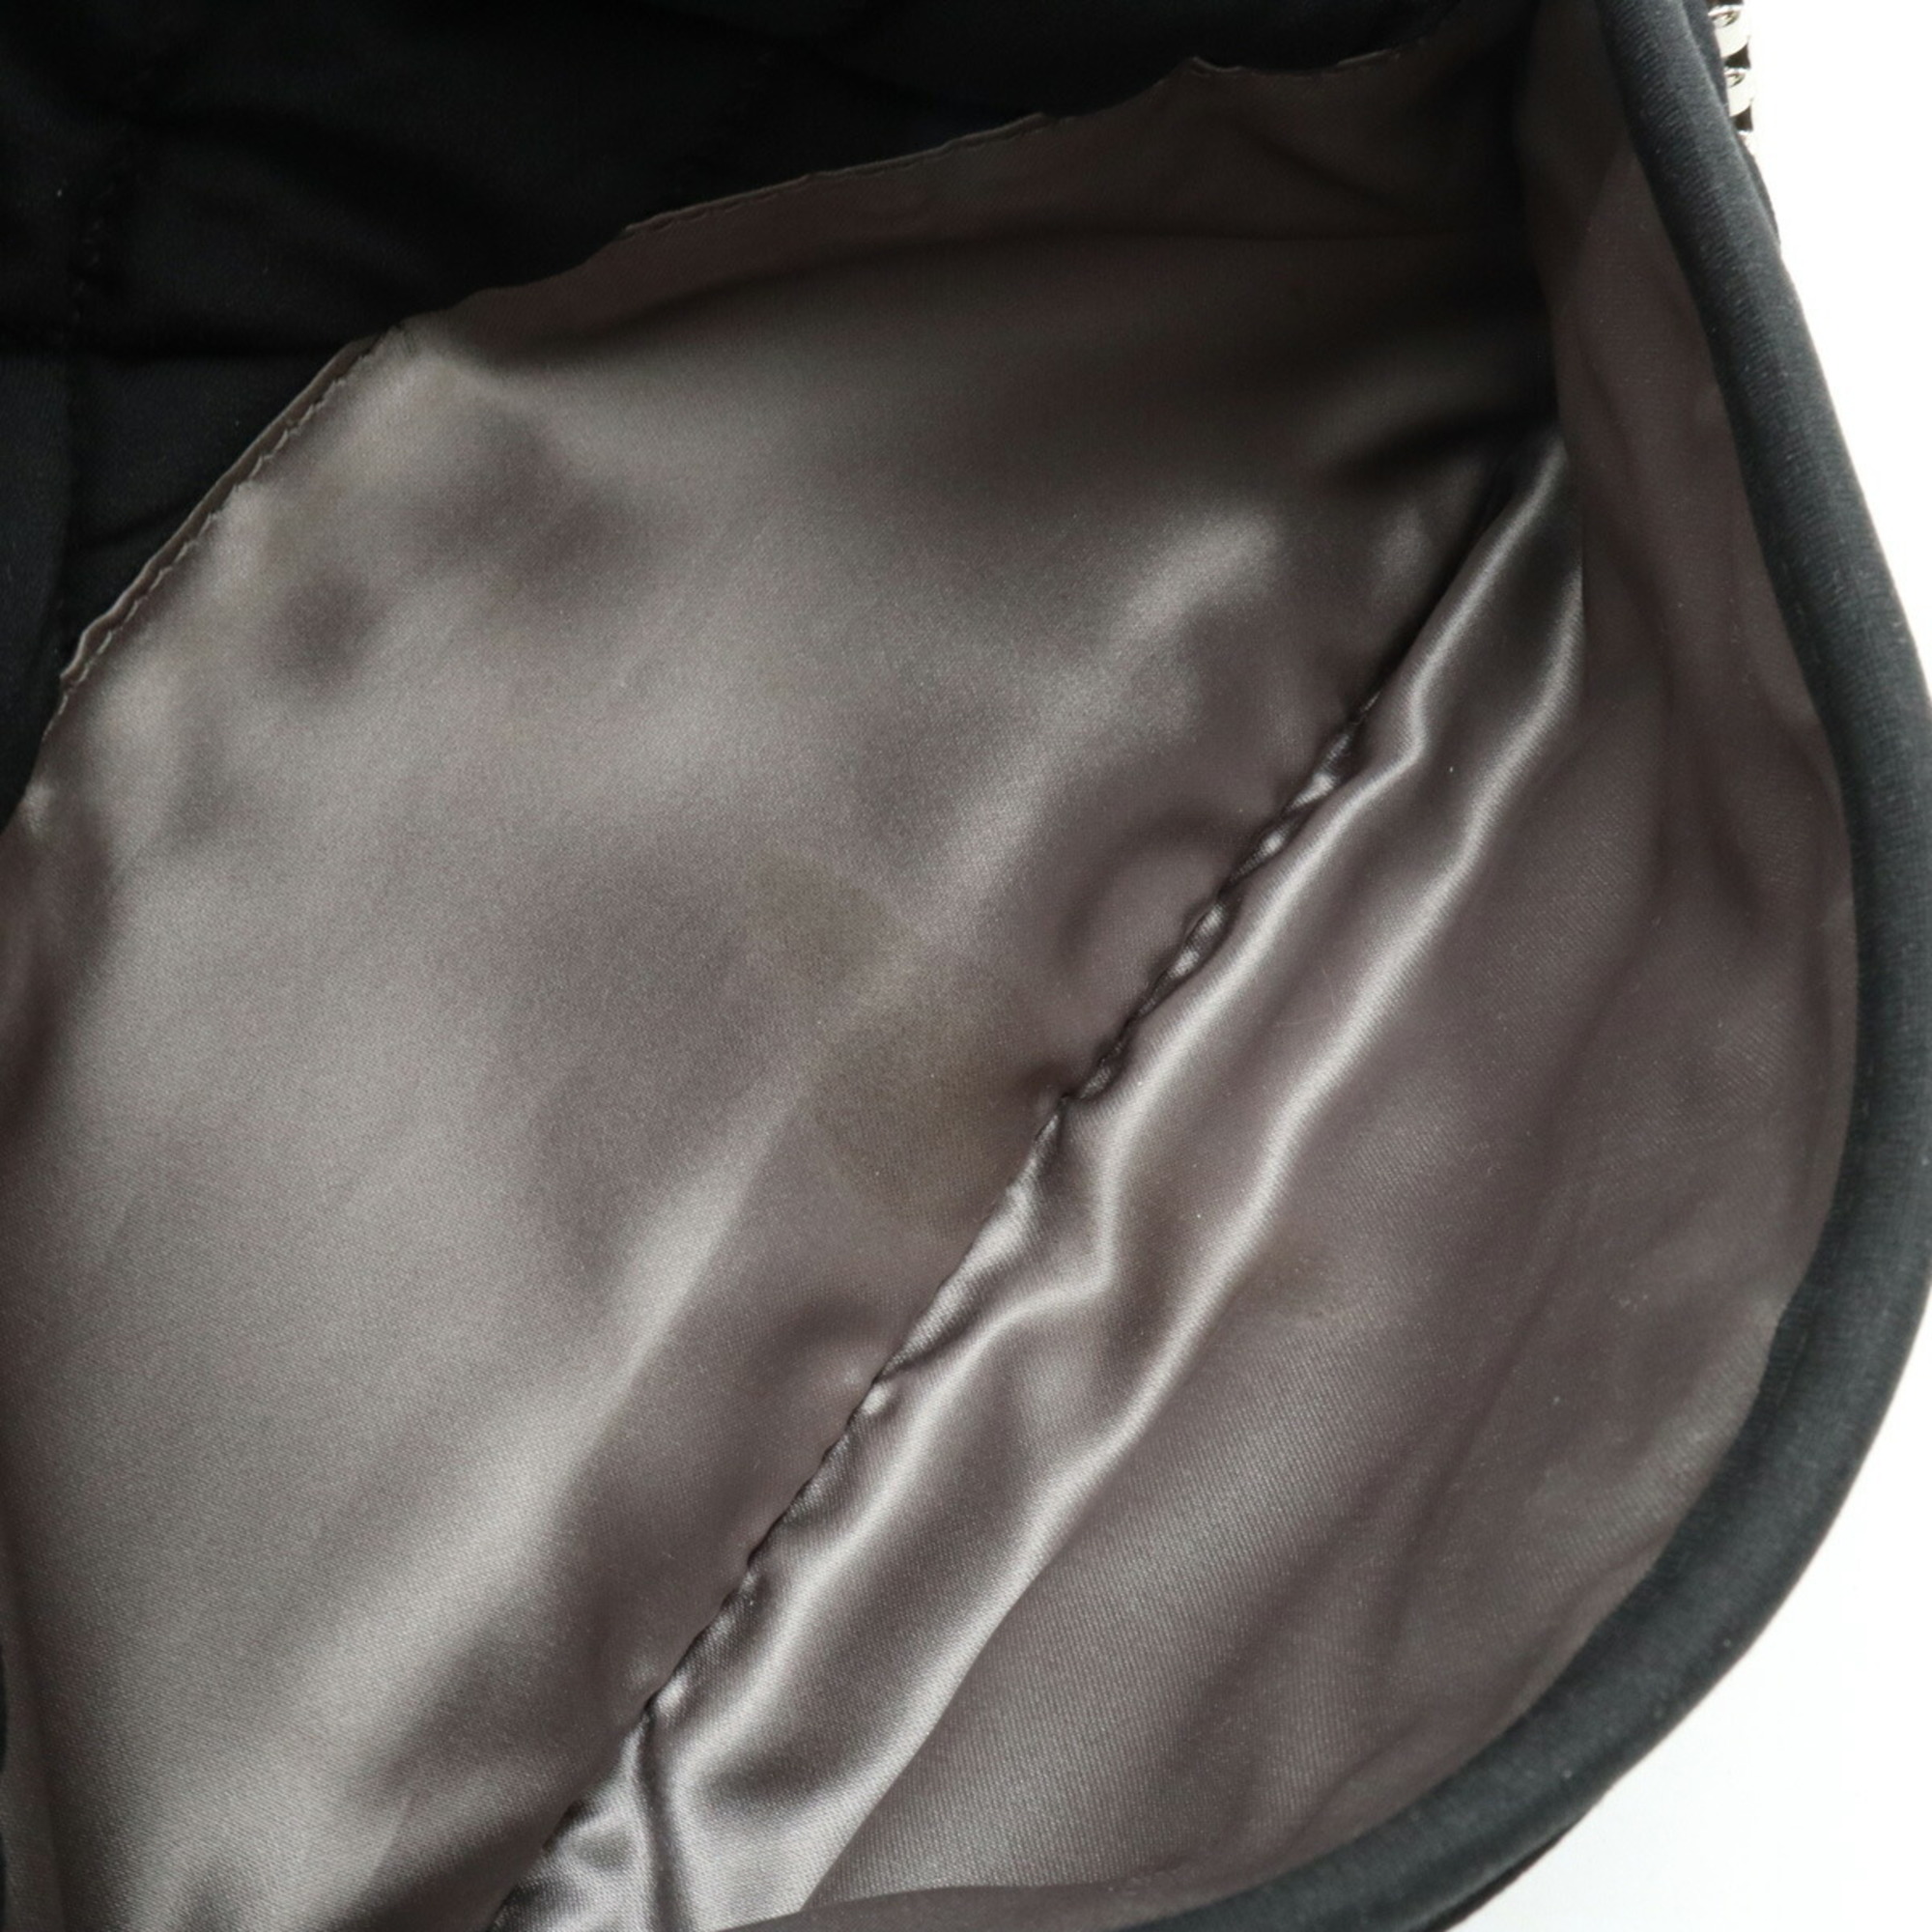 CHANEL Bubble Quilt Chain Shoulder Bag Cotton Jersey Black 6168